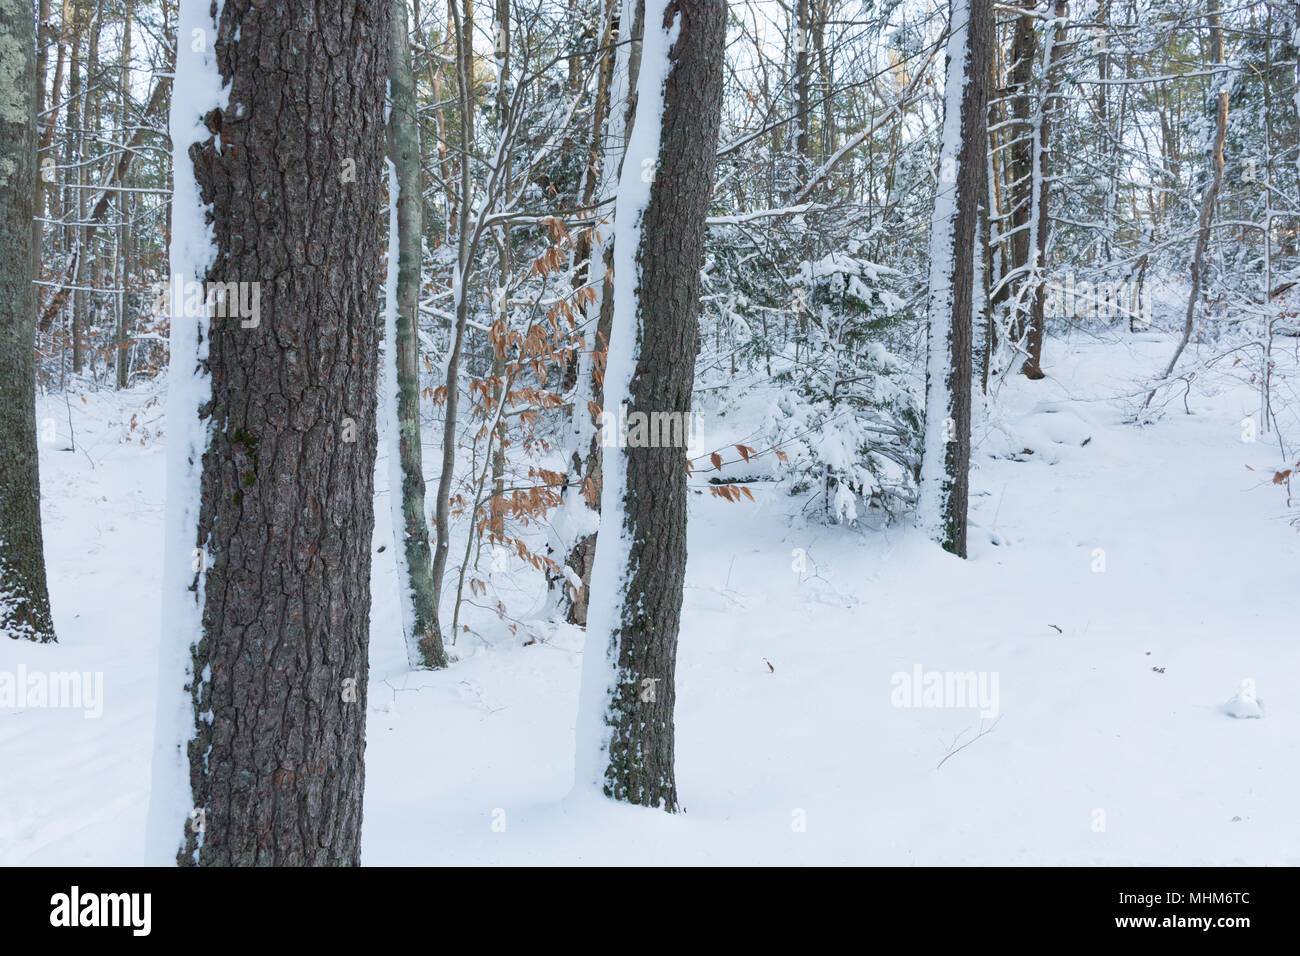 La neige fraîche en hiver woods, Breakheart Reservation, Wakefield, MA Banque D'Images